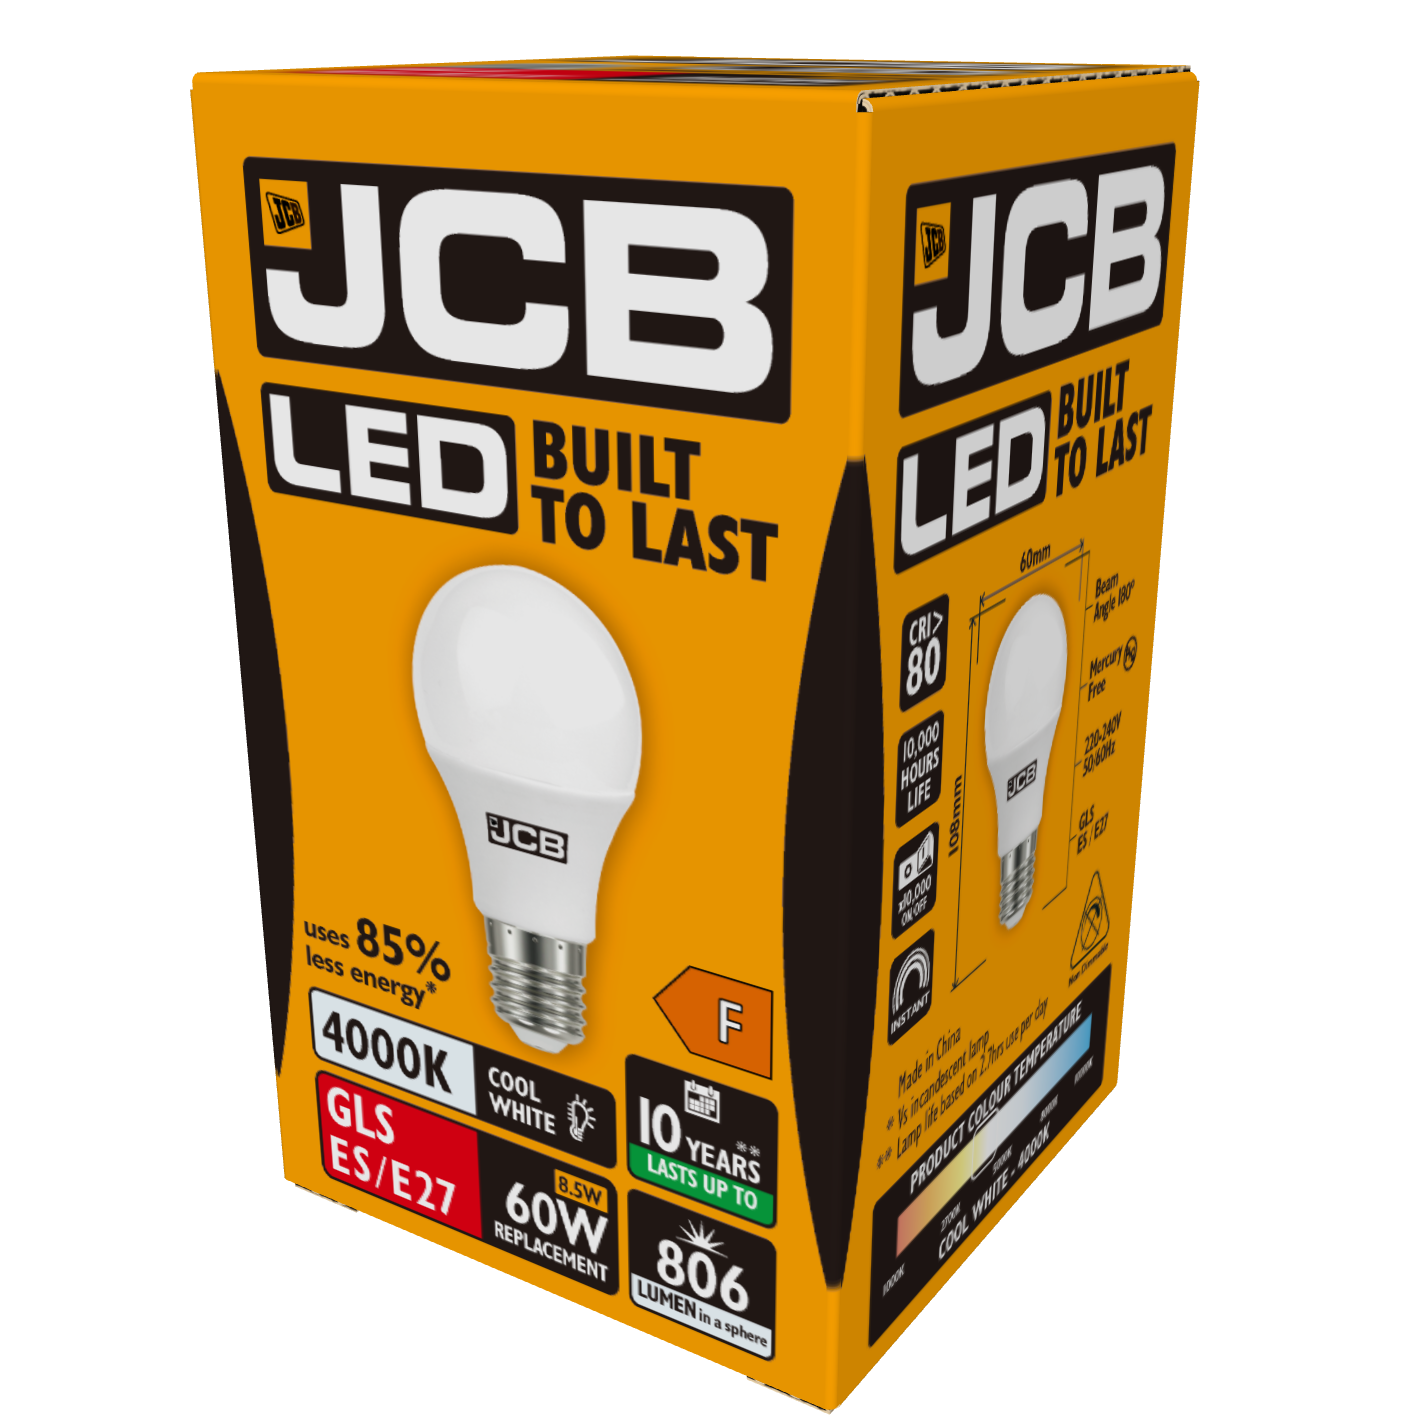 JCB LED GLS E27 (ES) 806lm 8.5W 4,000K (Cool White), Box of 1